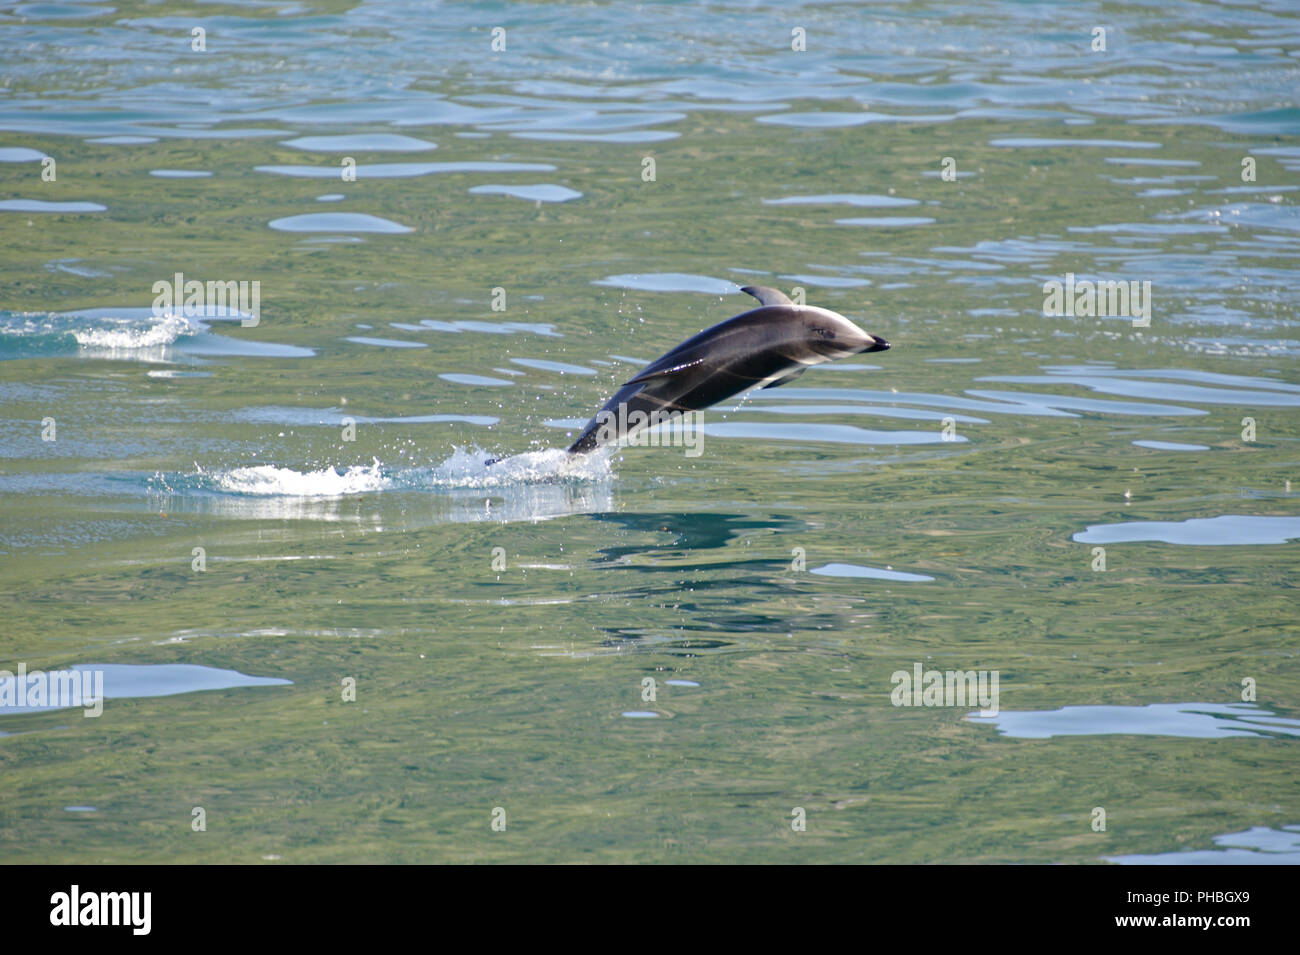 Dusky Dolphin jumping Stock Photo